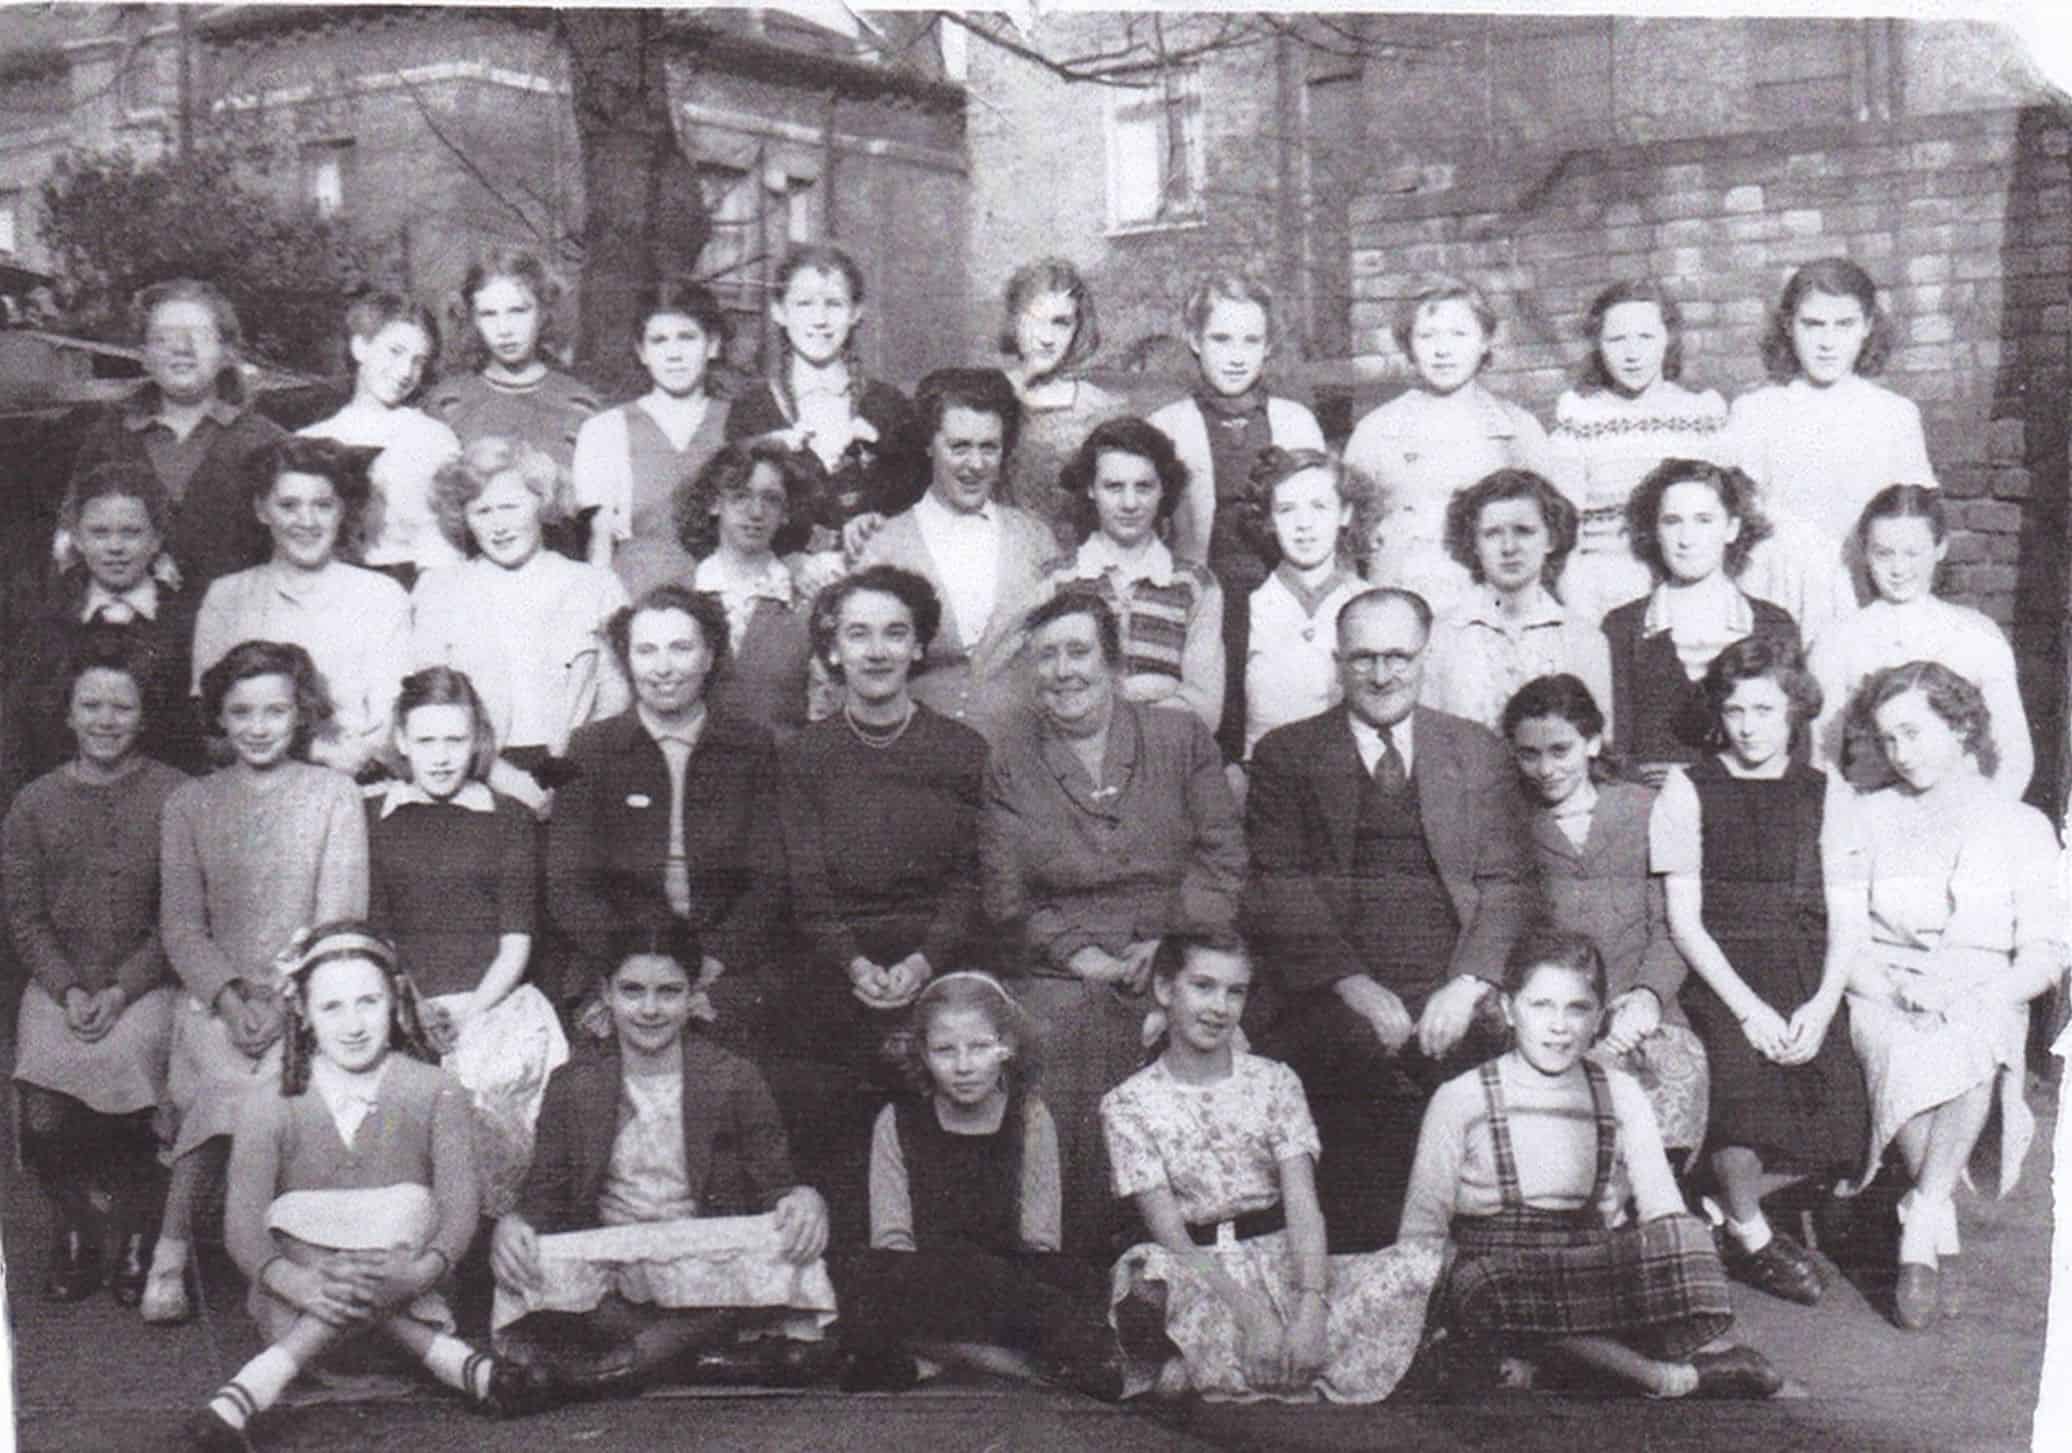 Vera, far right seated